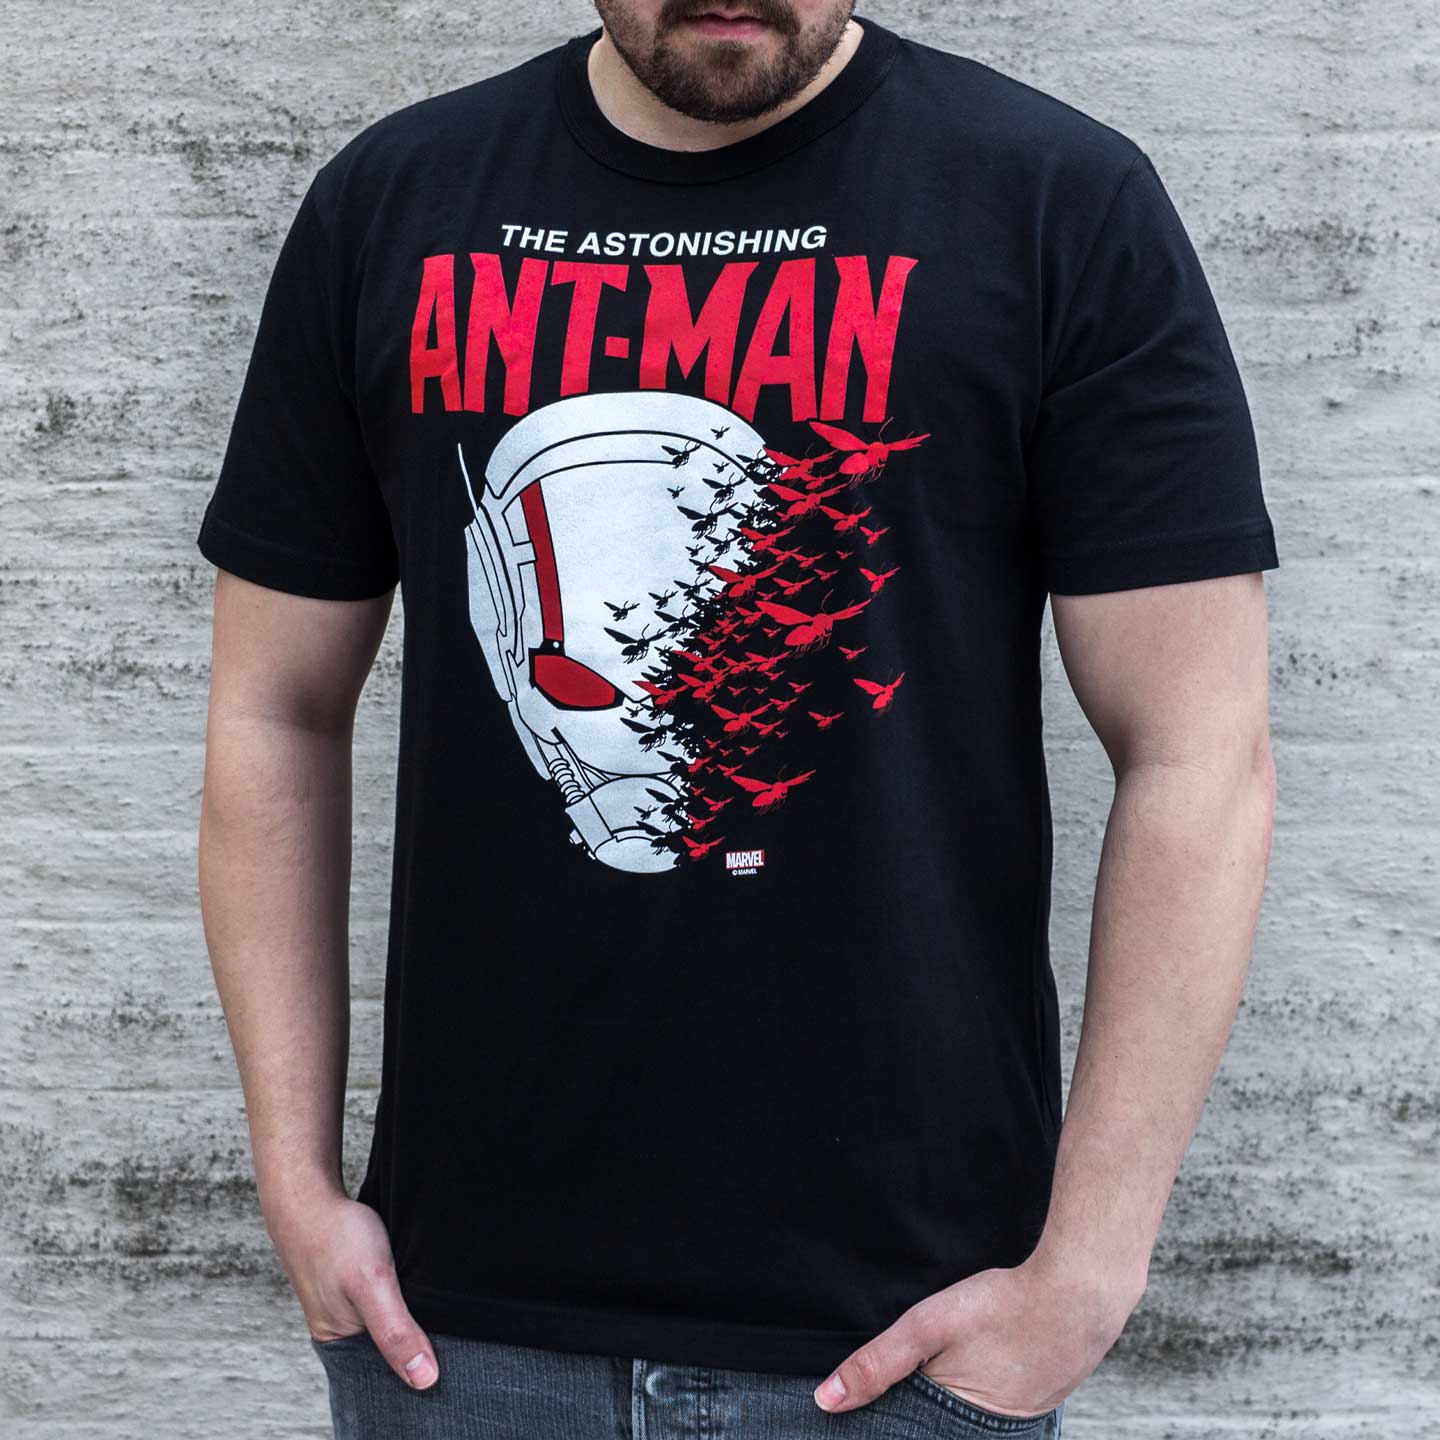 Ant-Man T-shirt